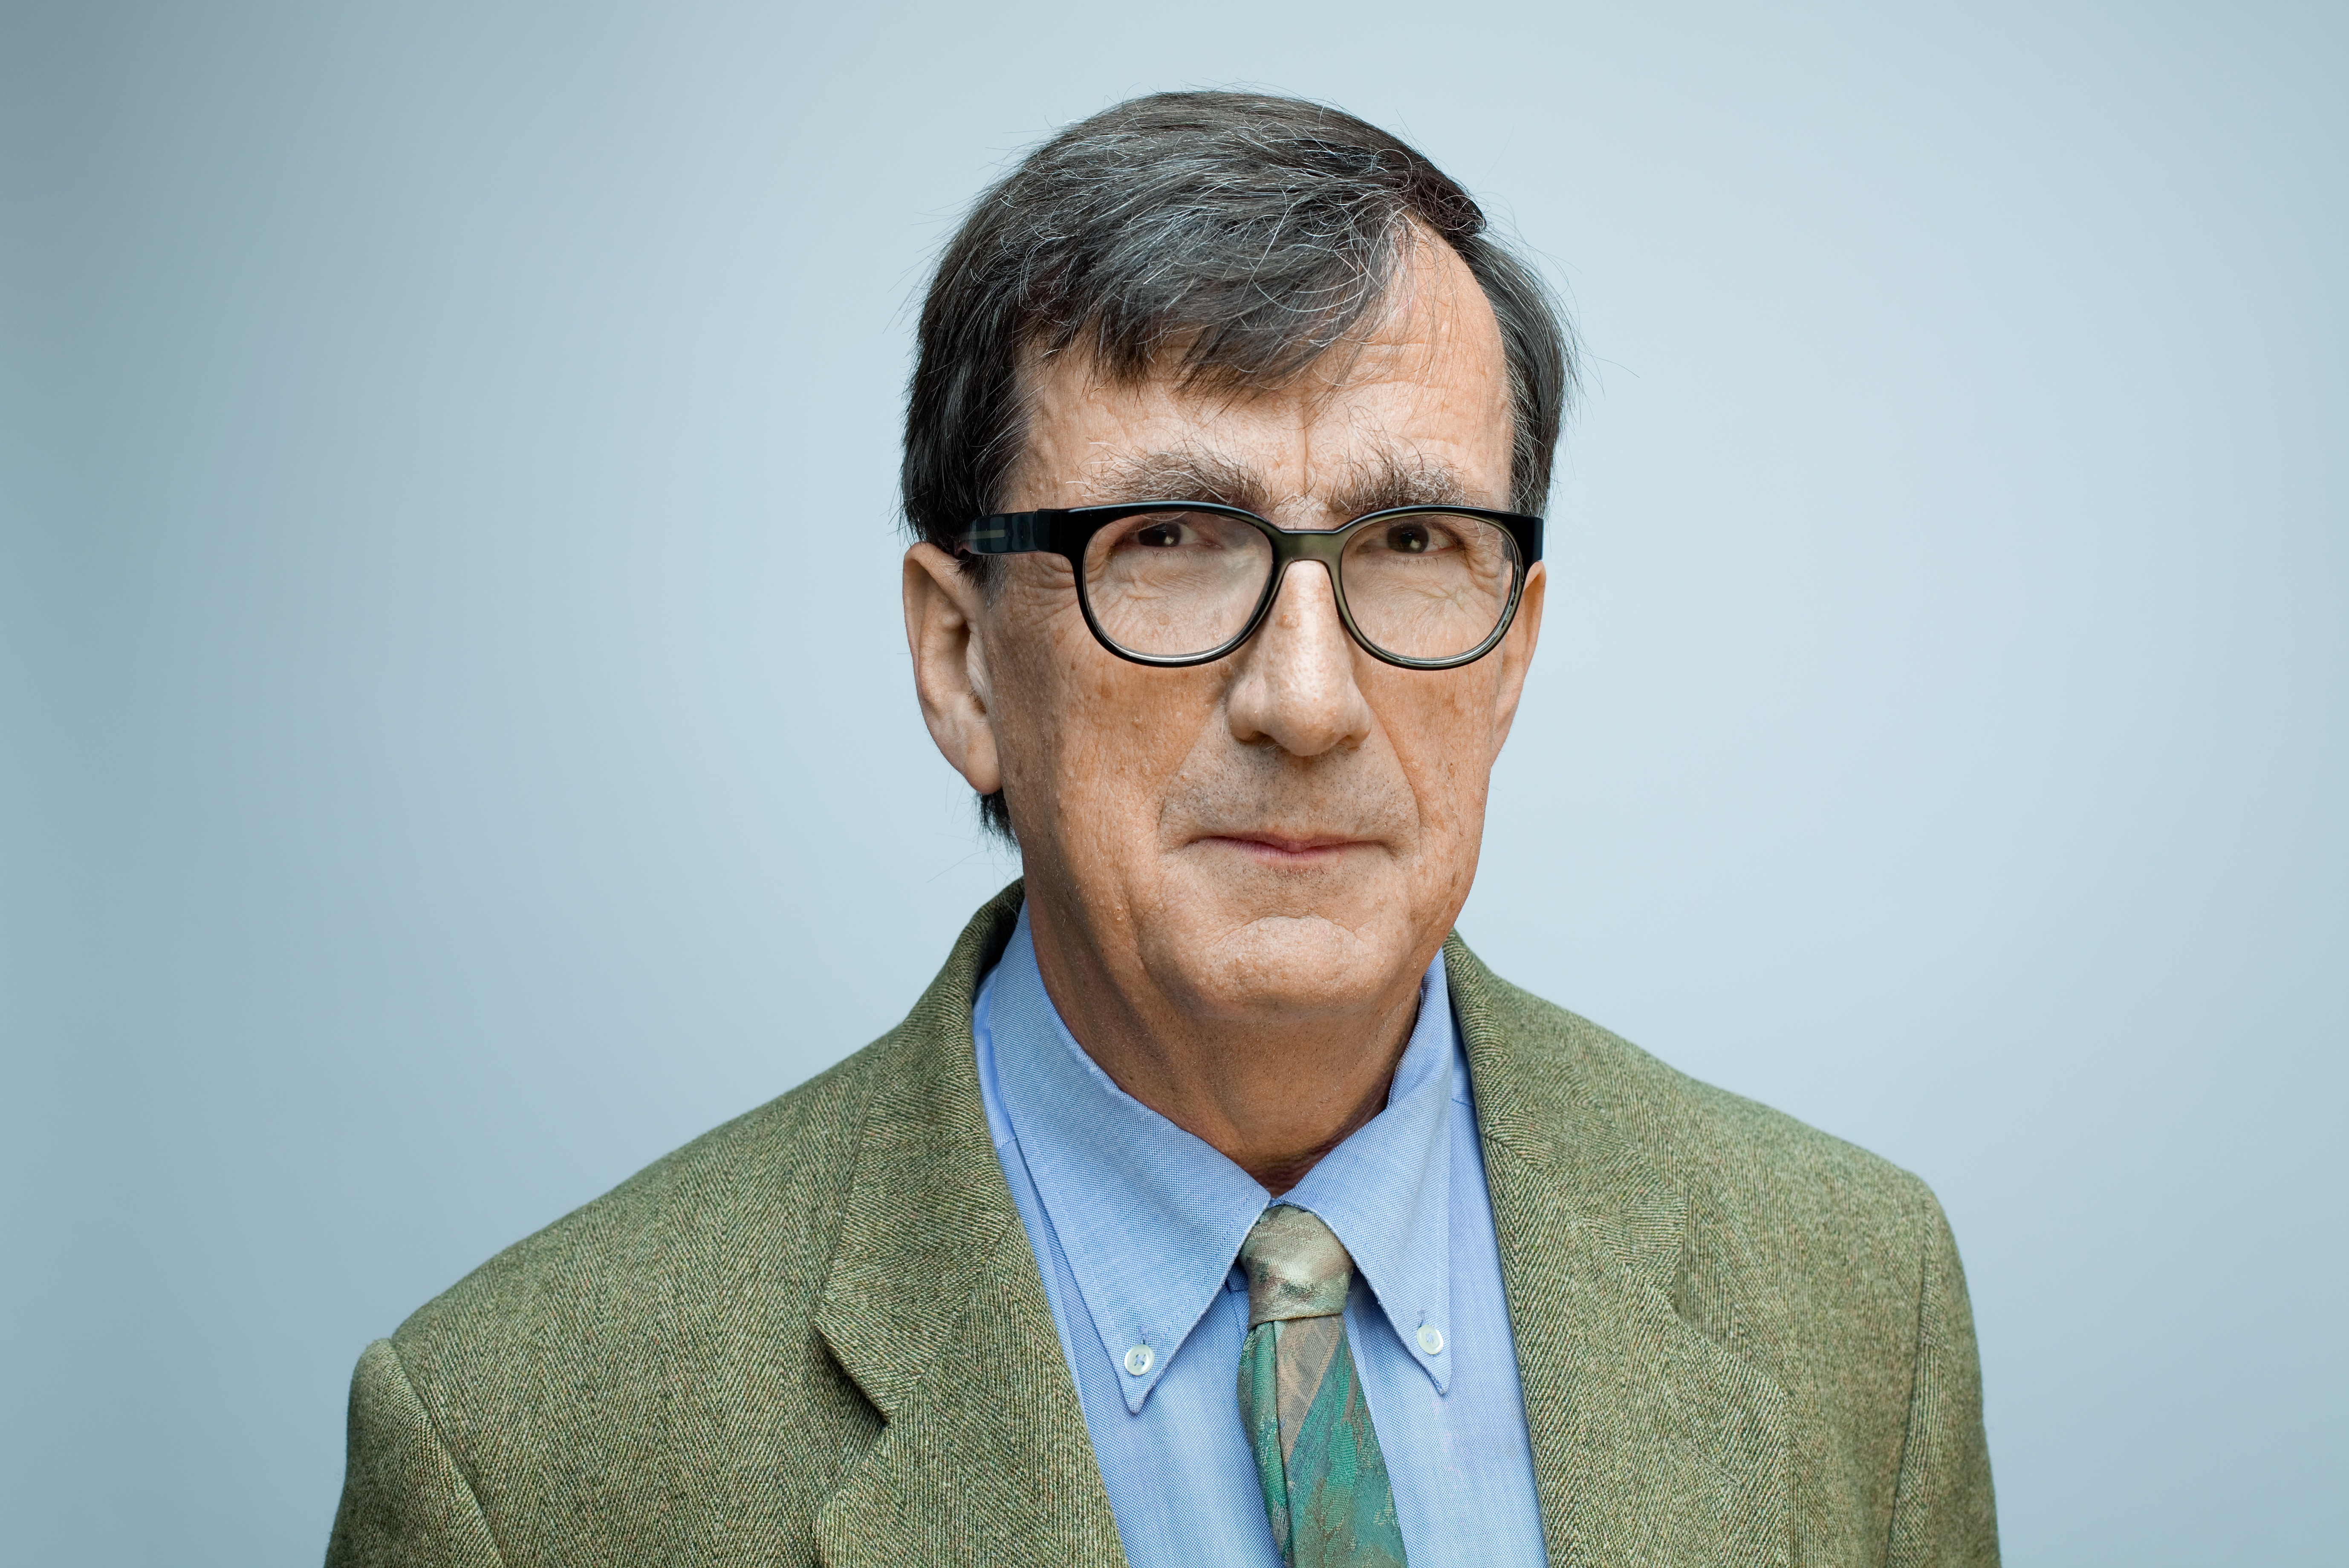 Bruno Latour, antropolog og sosiolog, er årets Holbergprisvinner. Latour er professor ved Sciences Po, Paris. Foto: Manuel Braun.